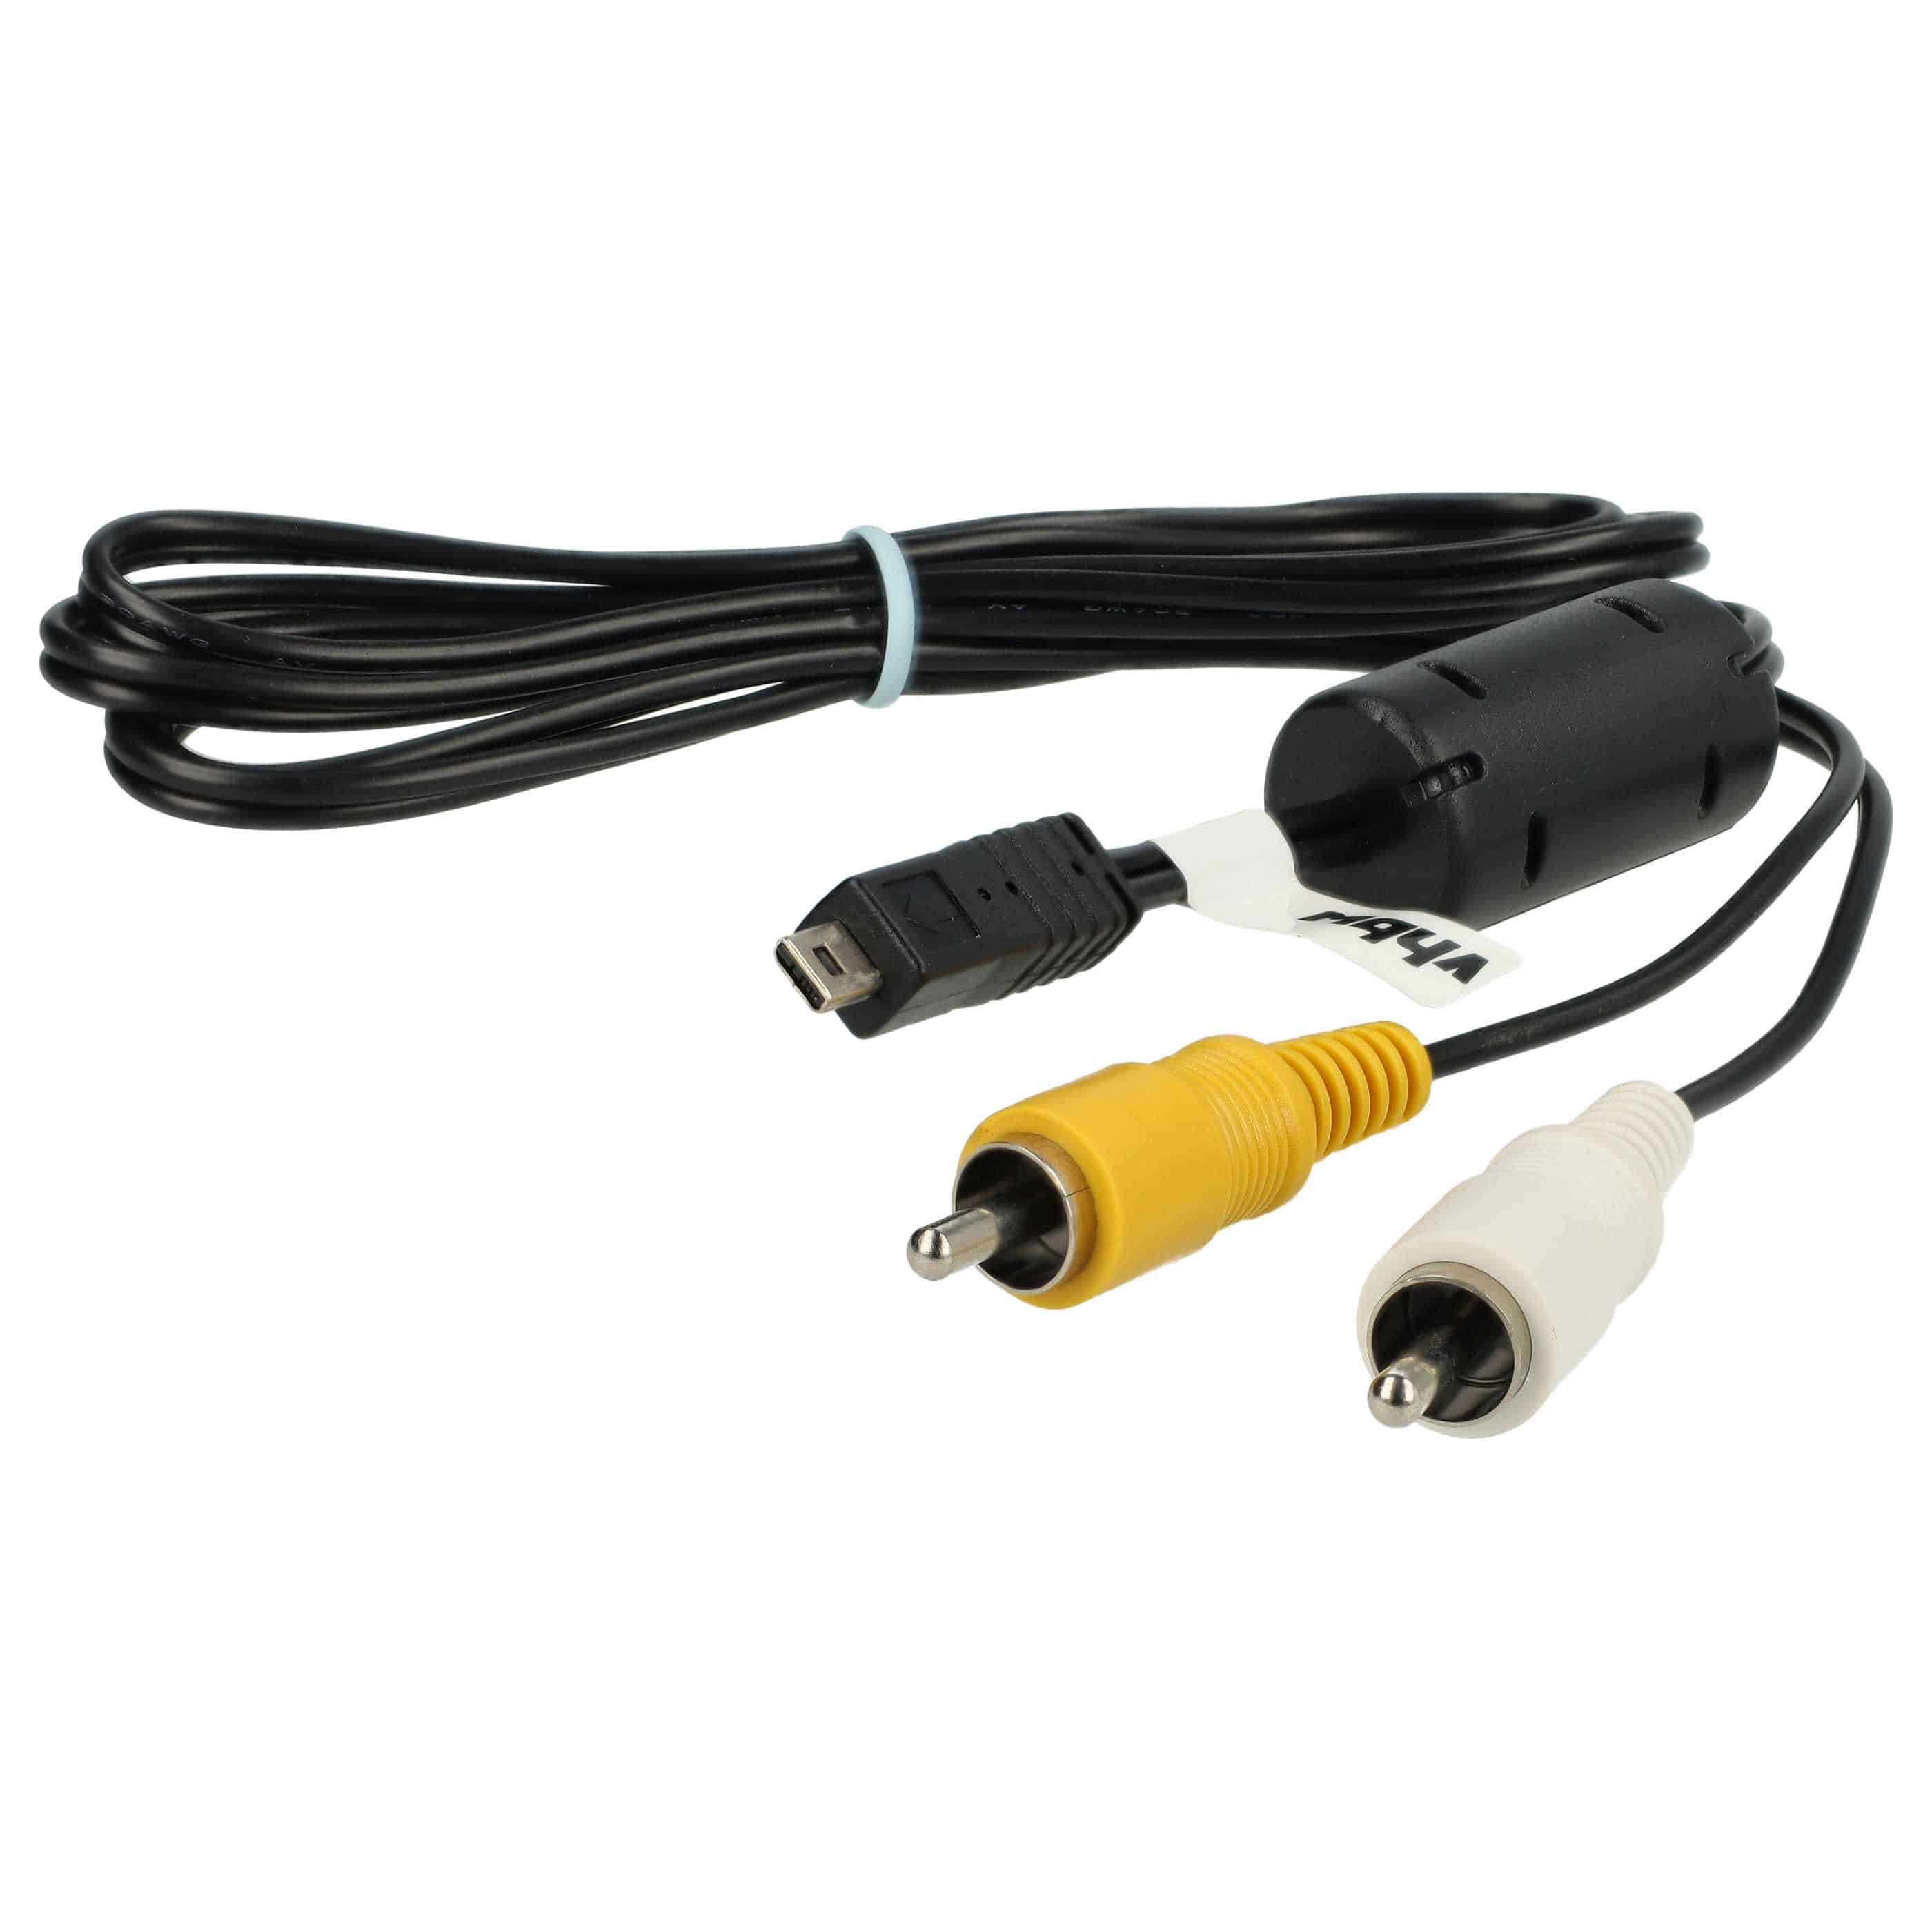 AV-Kabel als Ersatz für Nikon EG-CP14 für Nikon Kamera u.a. - 150 cm Länge